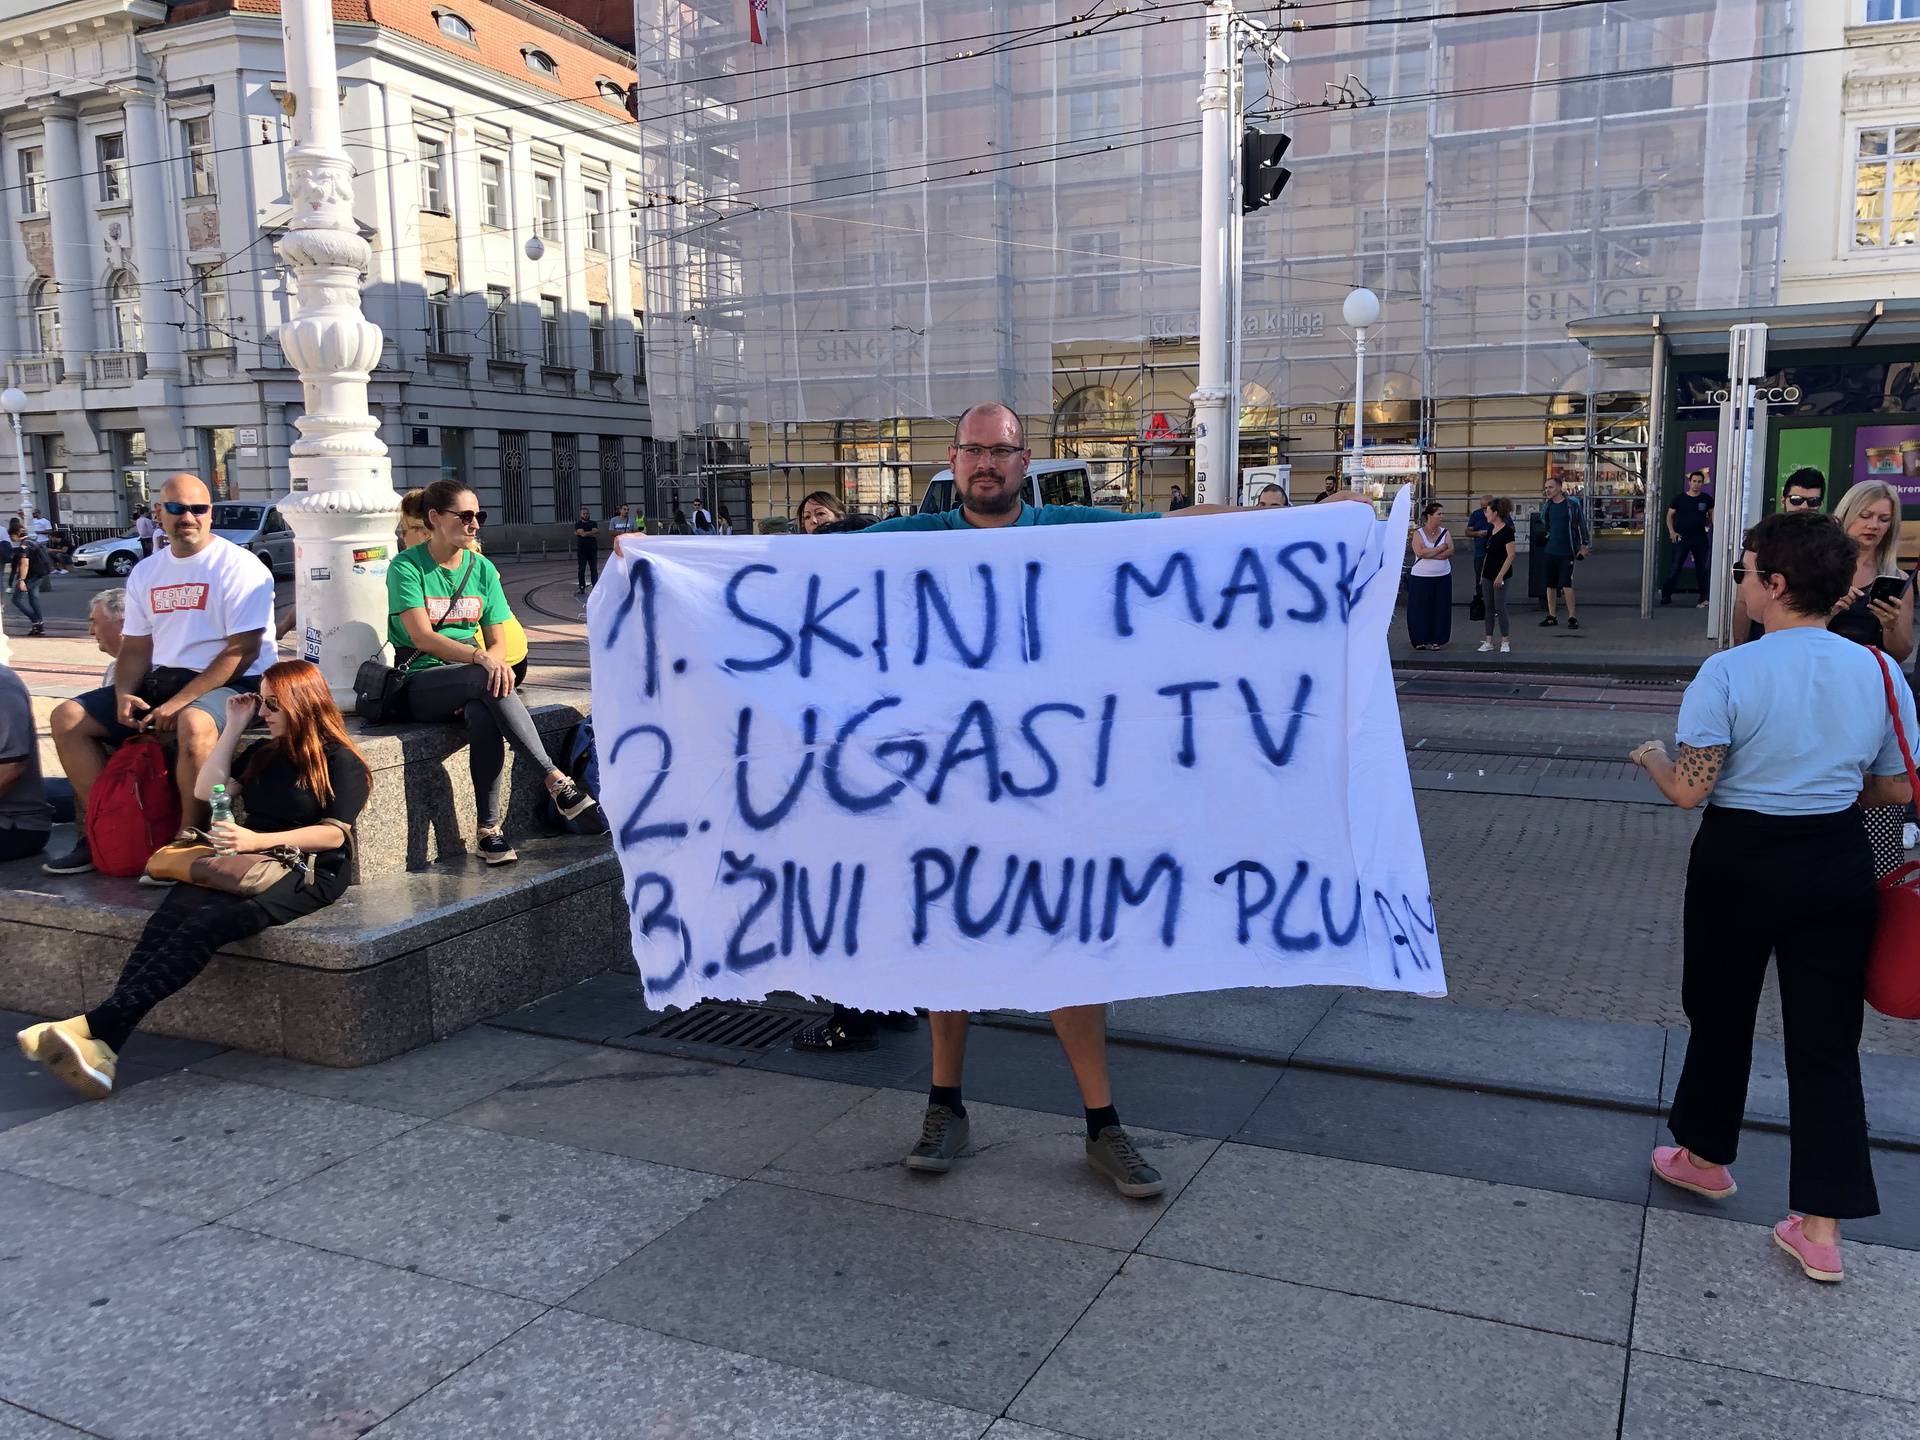 Tony Cetinski zaurlao: 'Cijepite si mamu!', a skup na trgu je završio s hrvatskom himnom